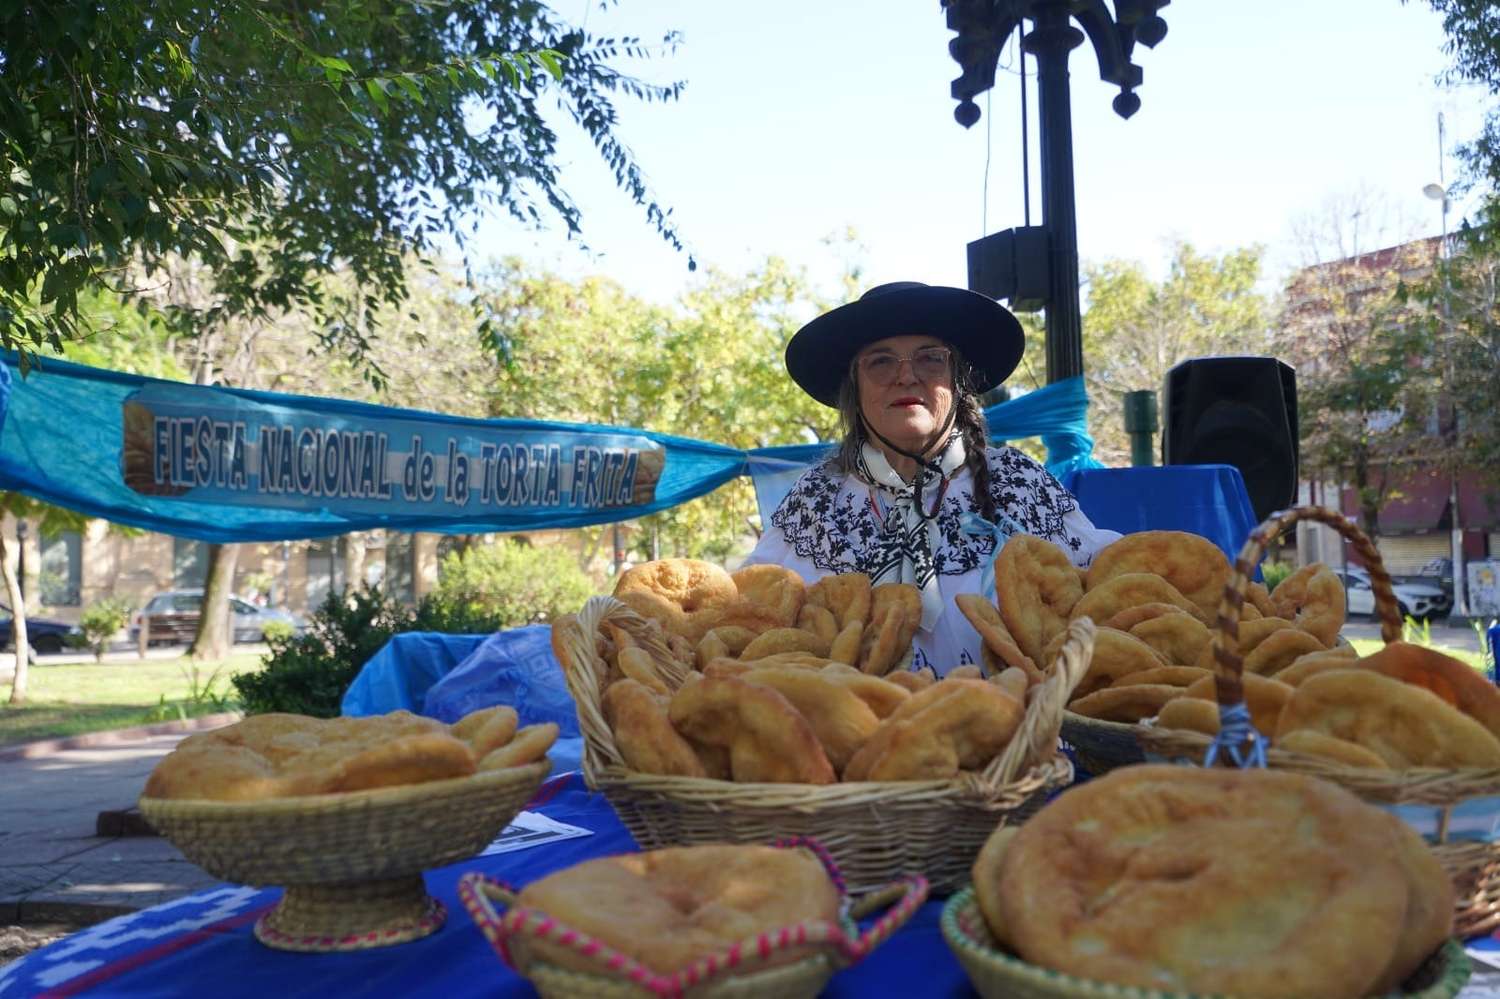 Fiesta Nacional de la Torta Frita en Mercedes: Cuánto sale la entrada y cómo adquirirla